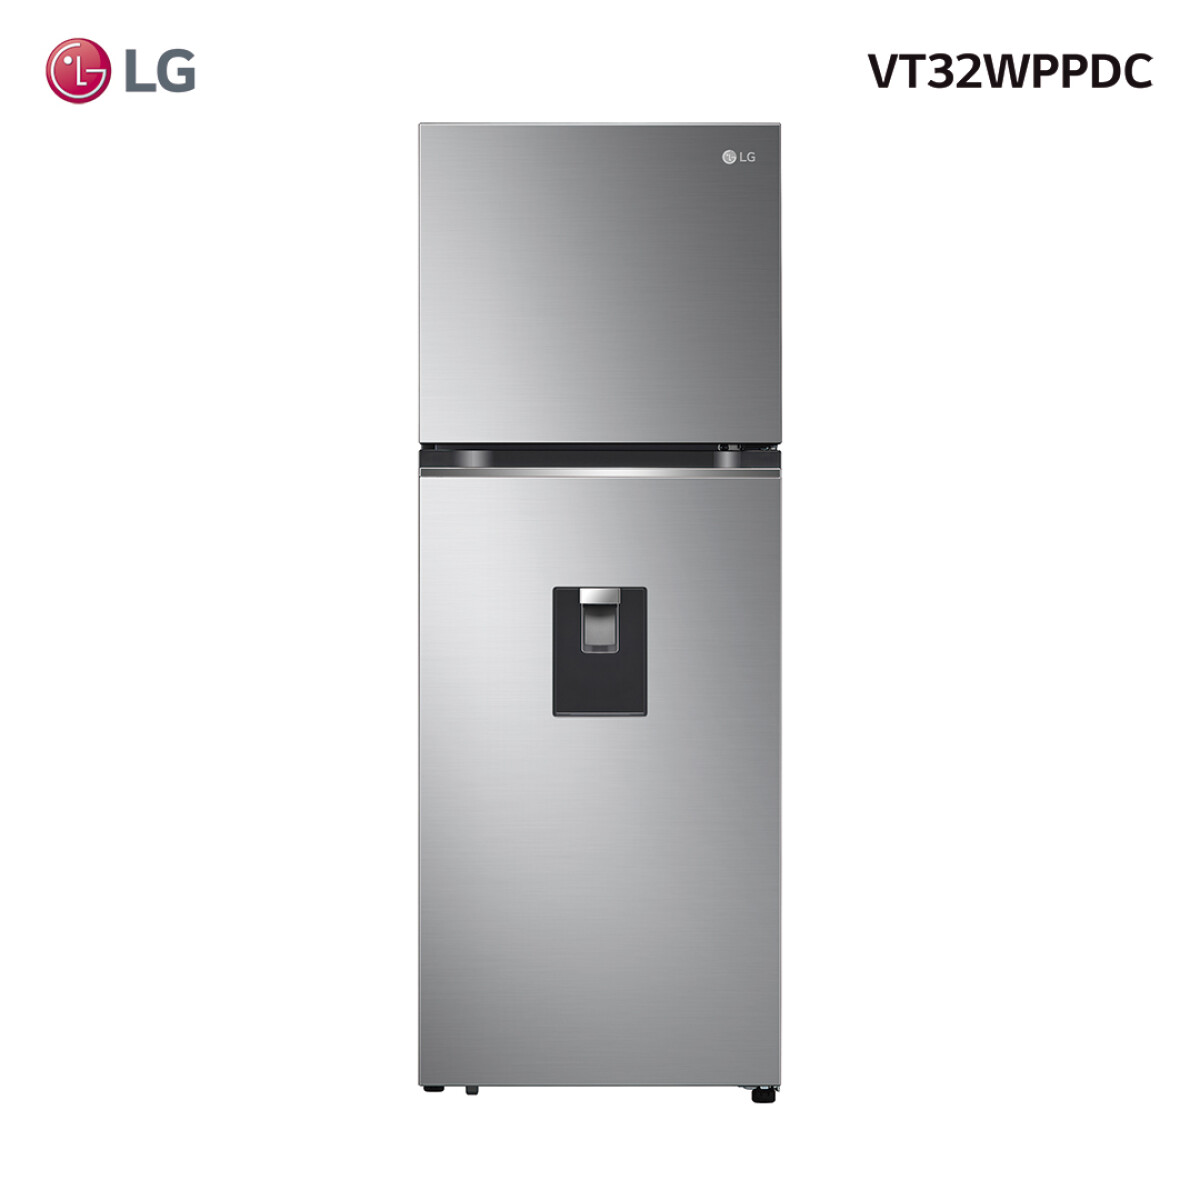 Refrigerador LG inverter 340L VT32WPPDC - 001 